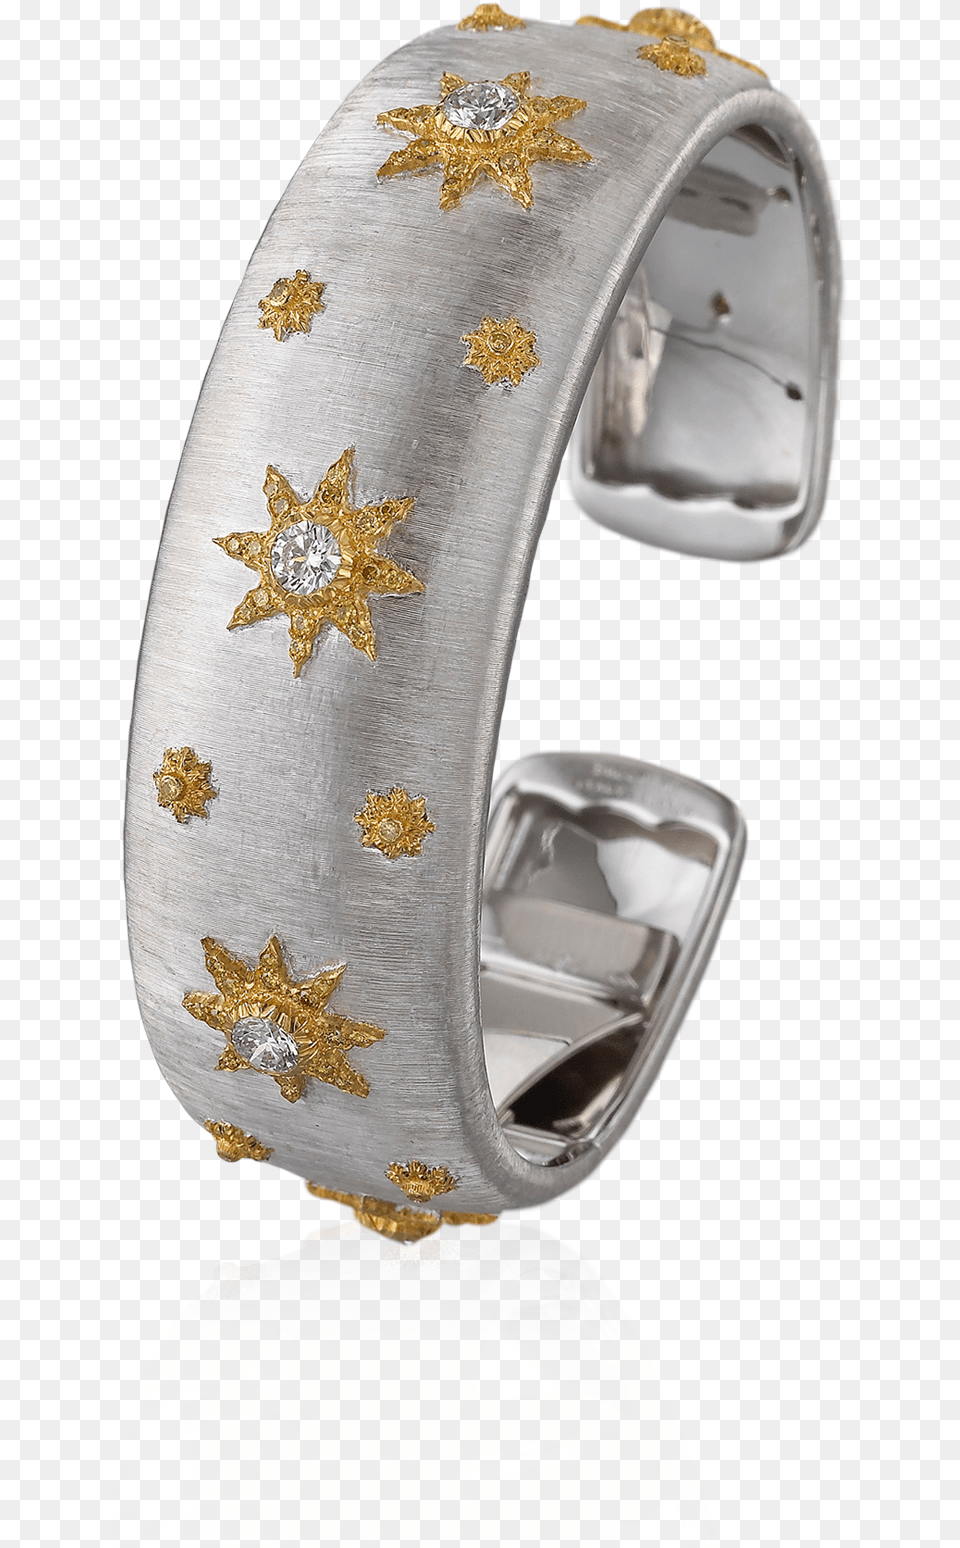 Buccellati Bracelets Cuff Bracelet Jewelry, Accessories, Ornament Free Transparent Png